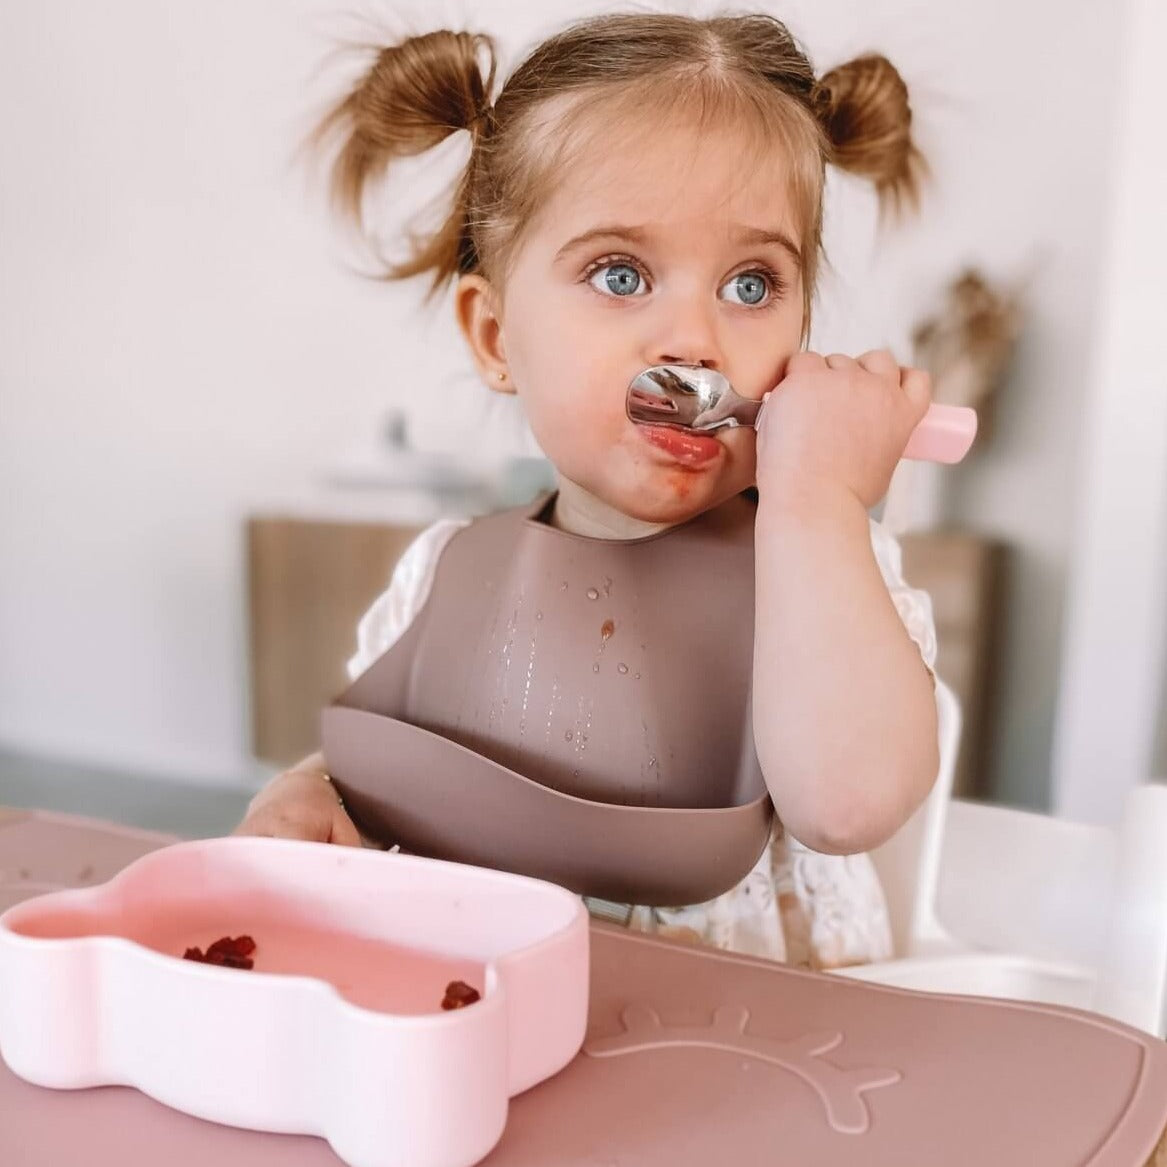 Toddler cutlery set dusty rose girl eating dinner